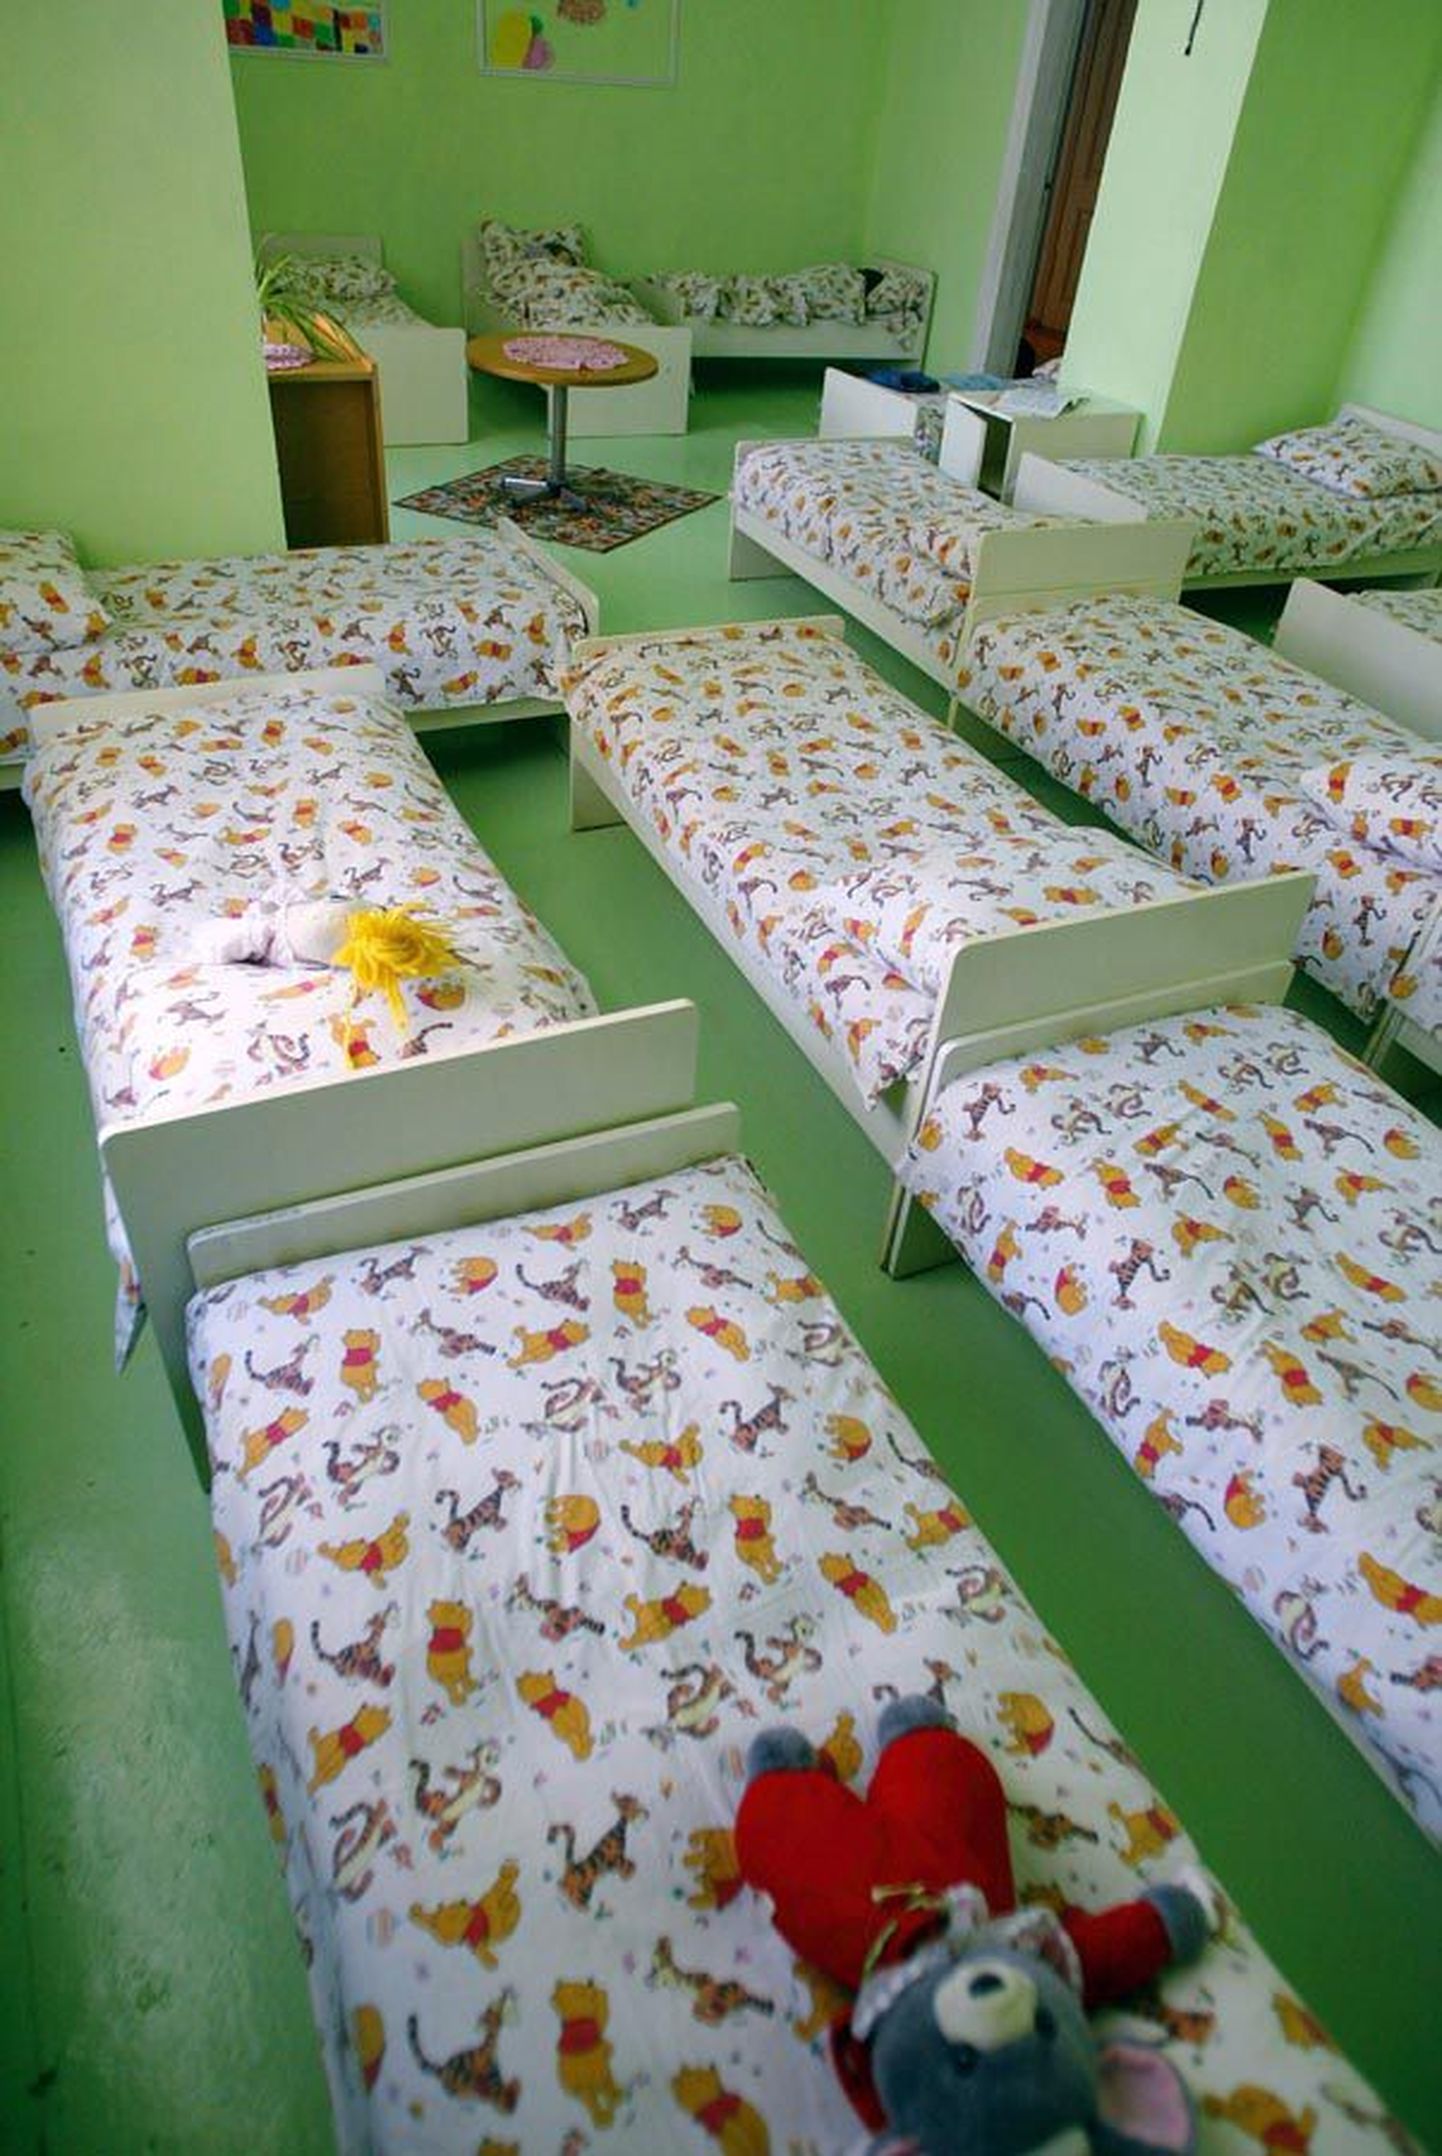 Mitmes Viljandimaa lasteaias on viimase paari nädala jooksul jäänud paljud voodid lõunapausi ajal tühjaks, sest lapsed on olnud kodus haiged.